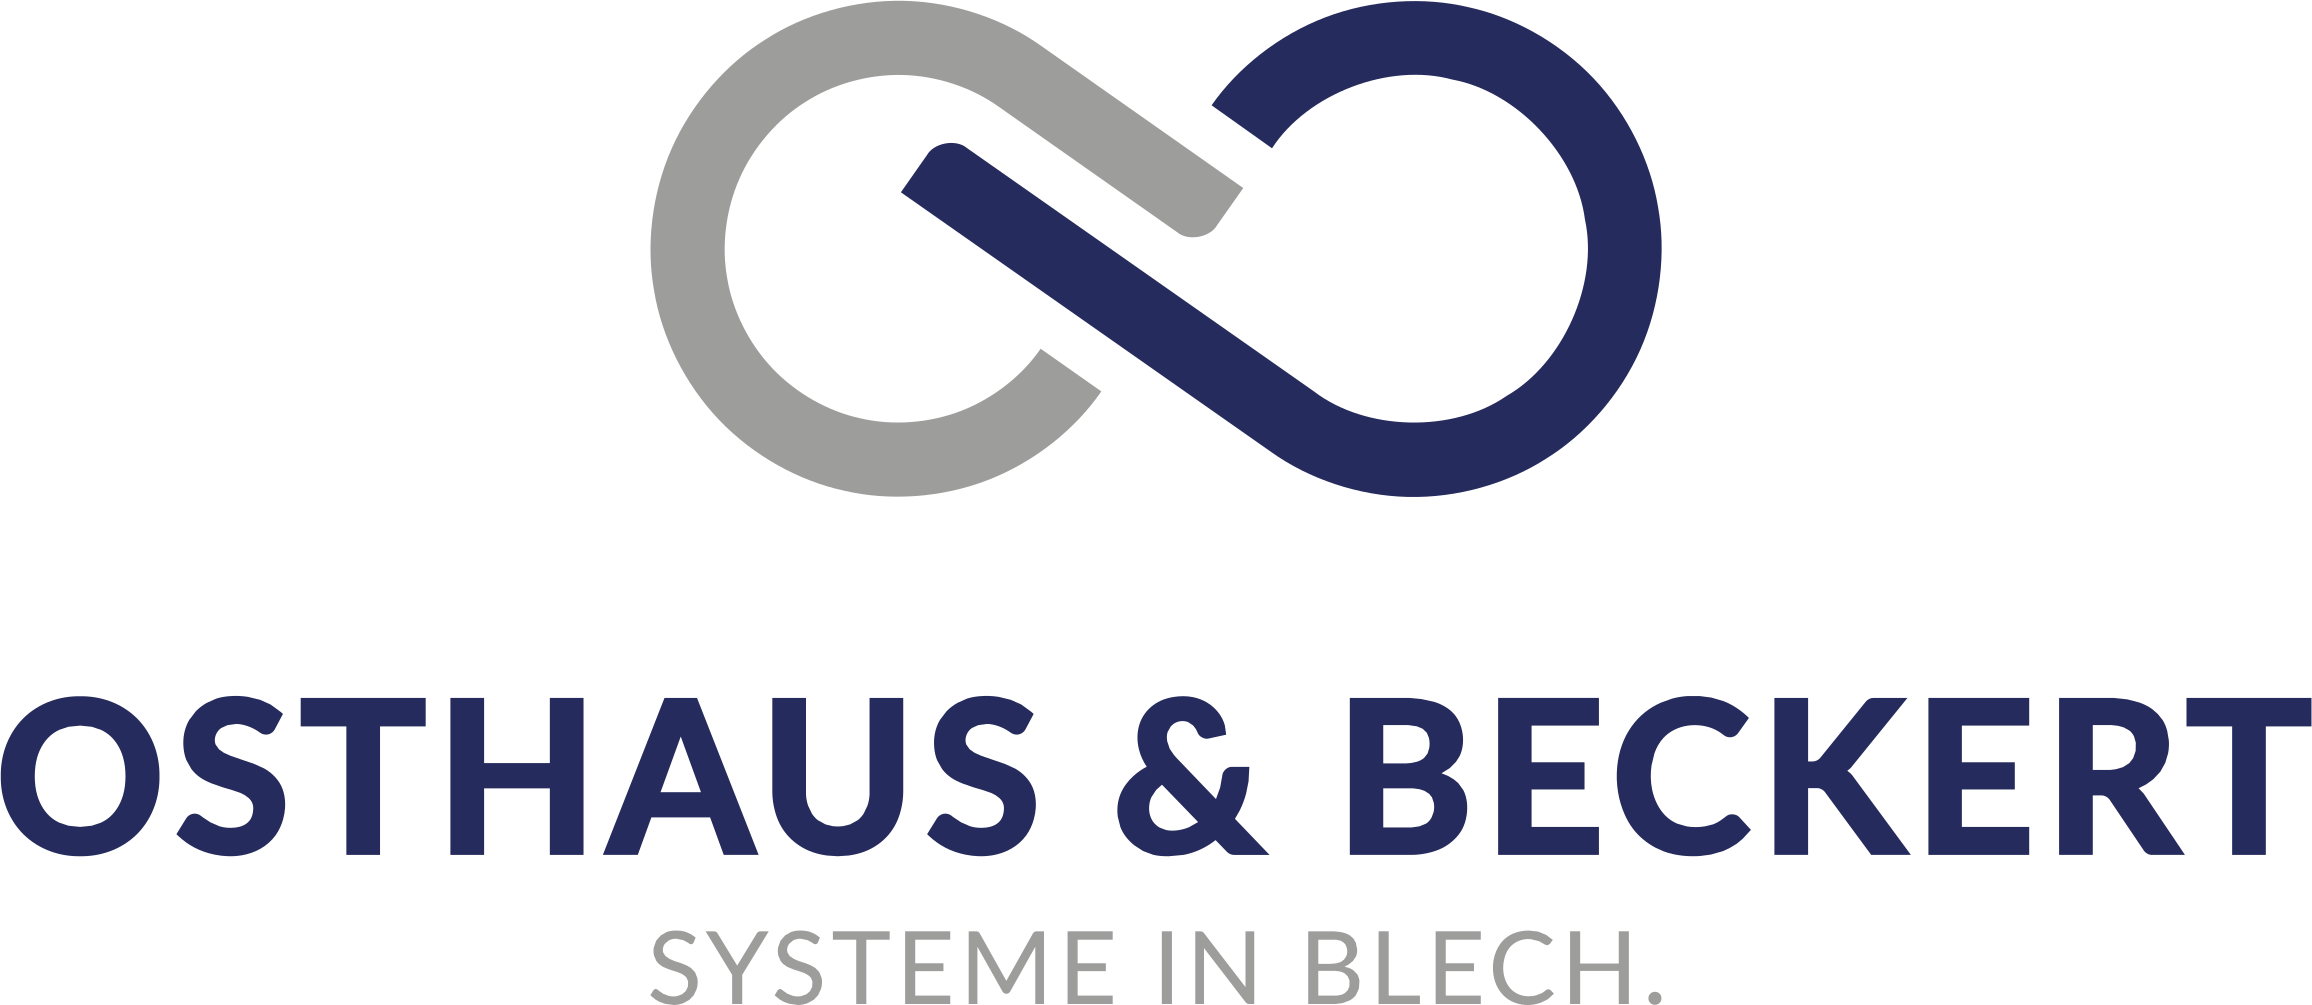 Logo_OSTHAUS_&_BECKERT_Systeme_in_Blech_farbig_vertikal